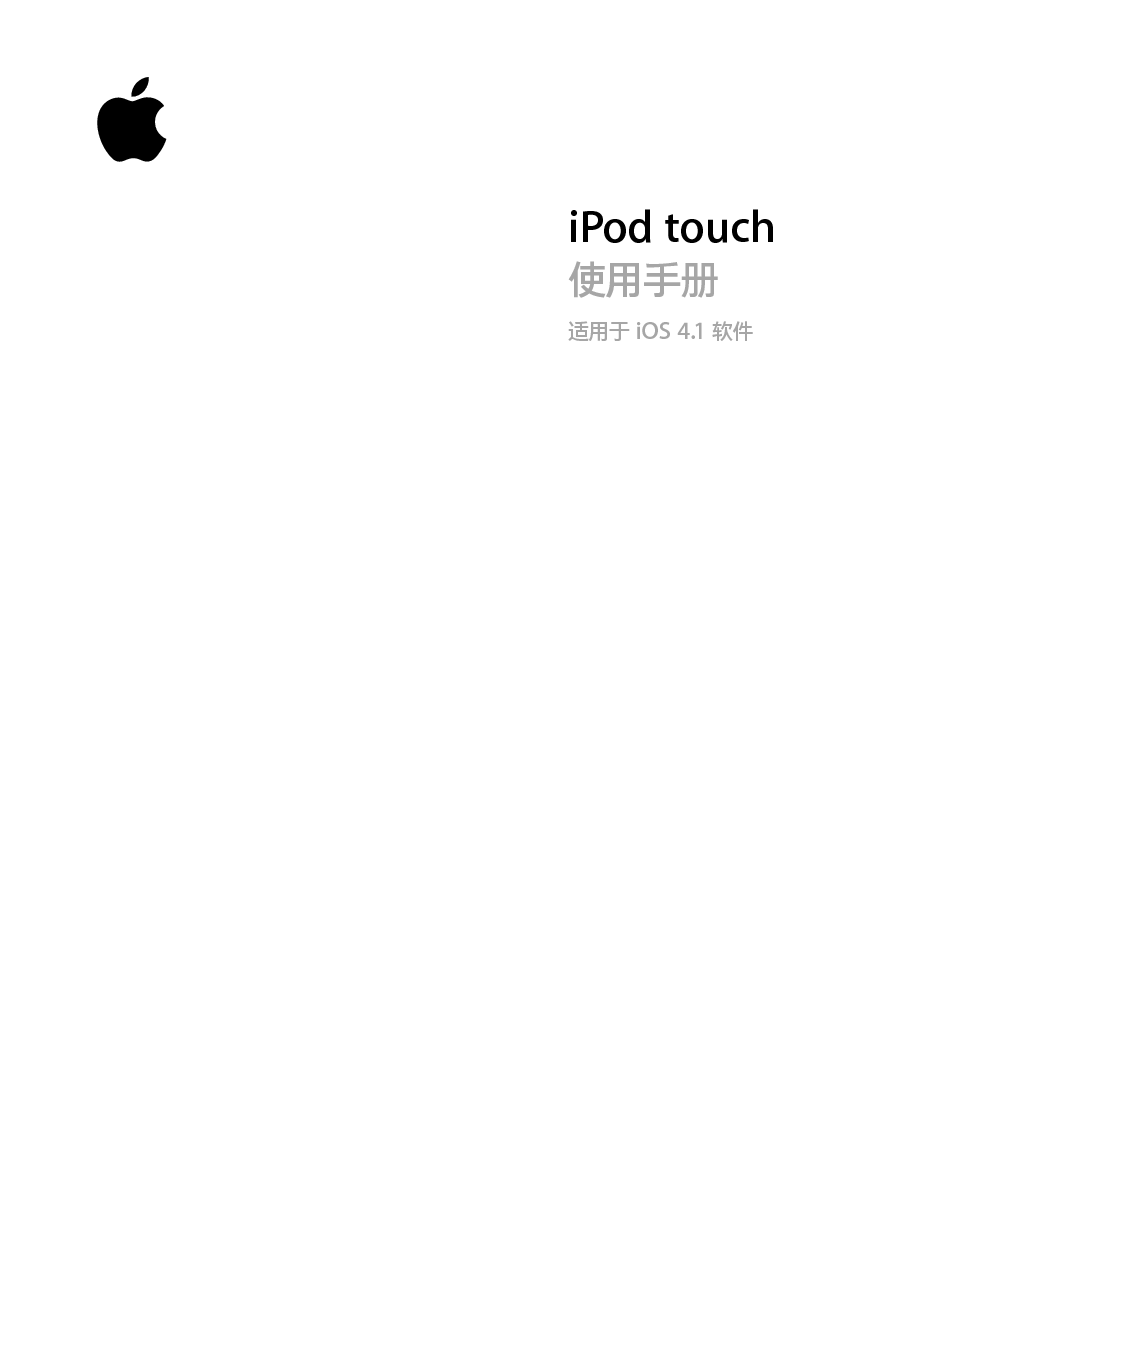 苹果 Apple iPod touch iOS 4.1 使用手册 封面